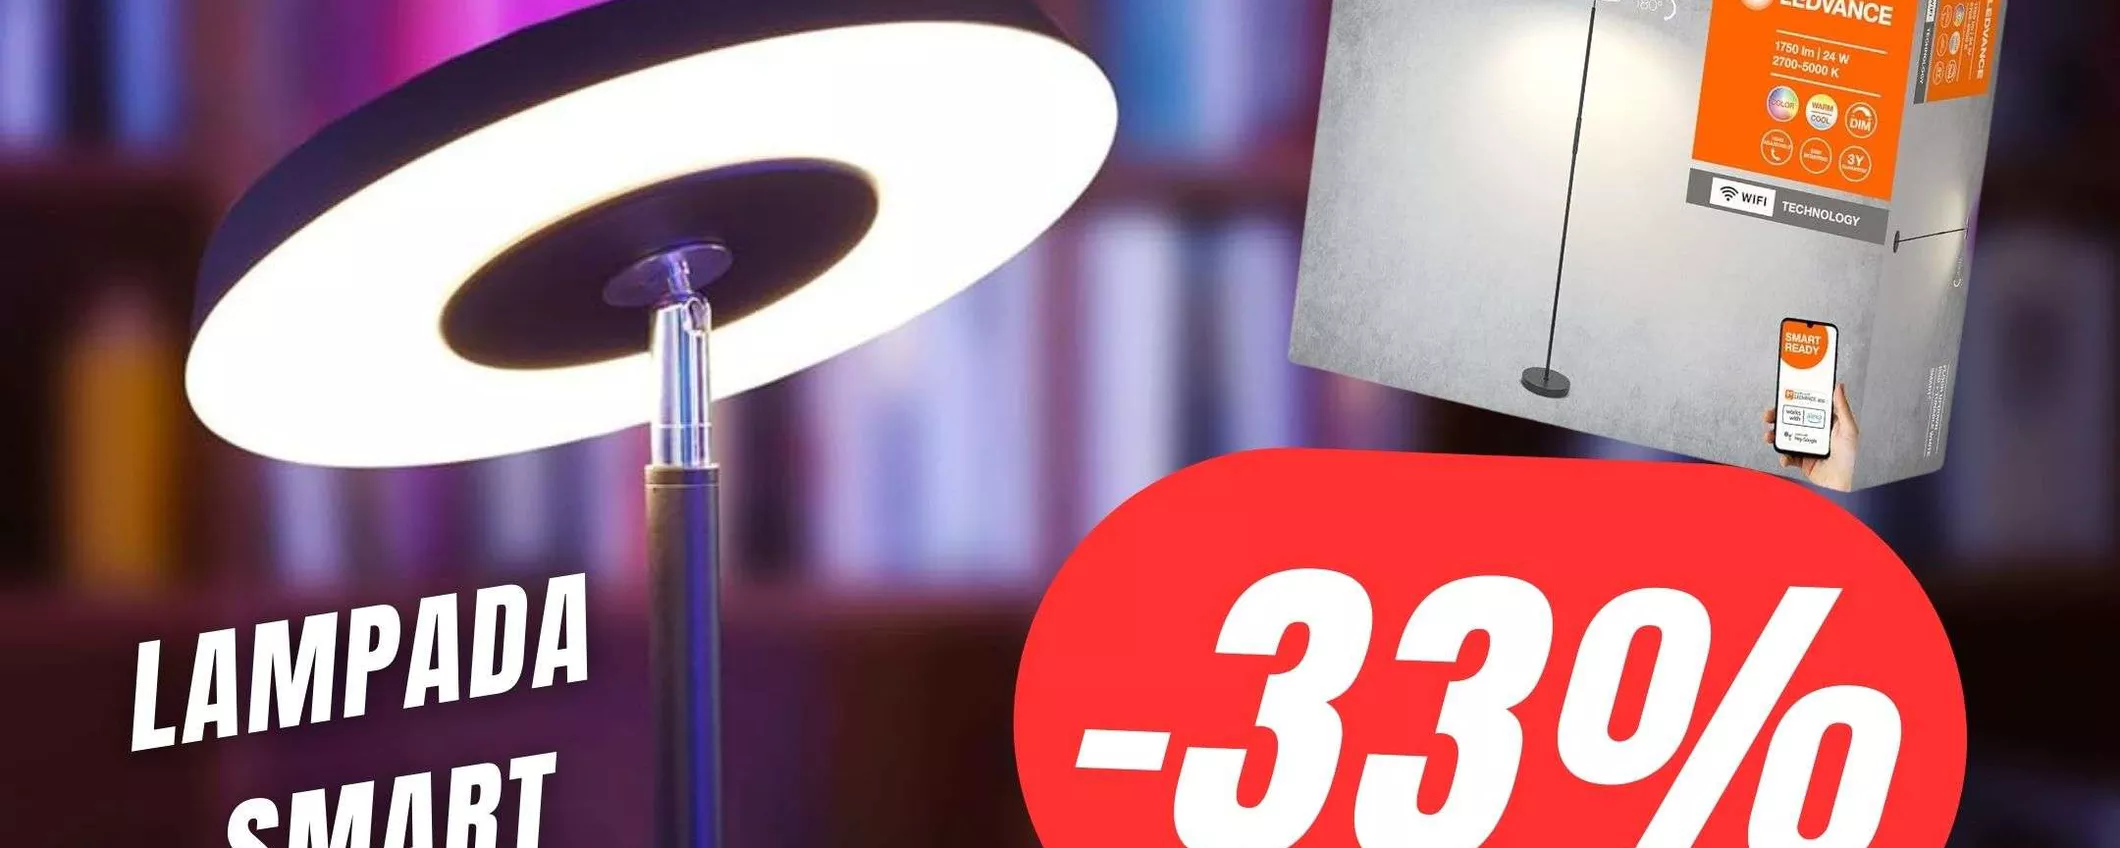 Questa Lampada Smart, cambierà totalmente il tuo salotto!